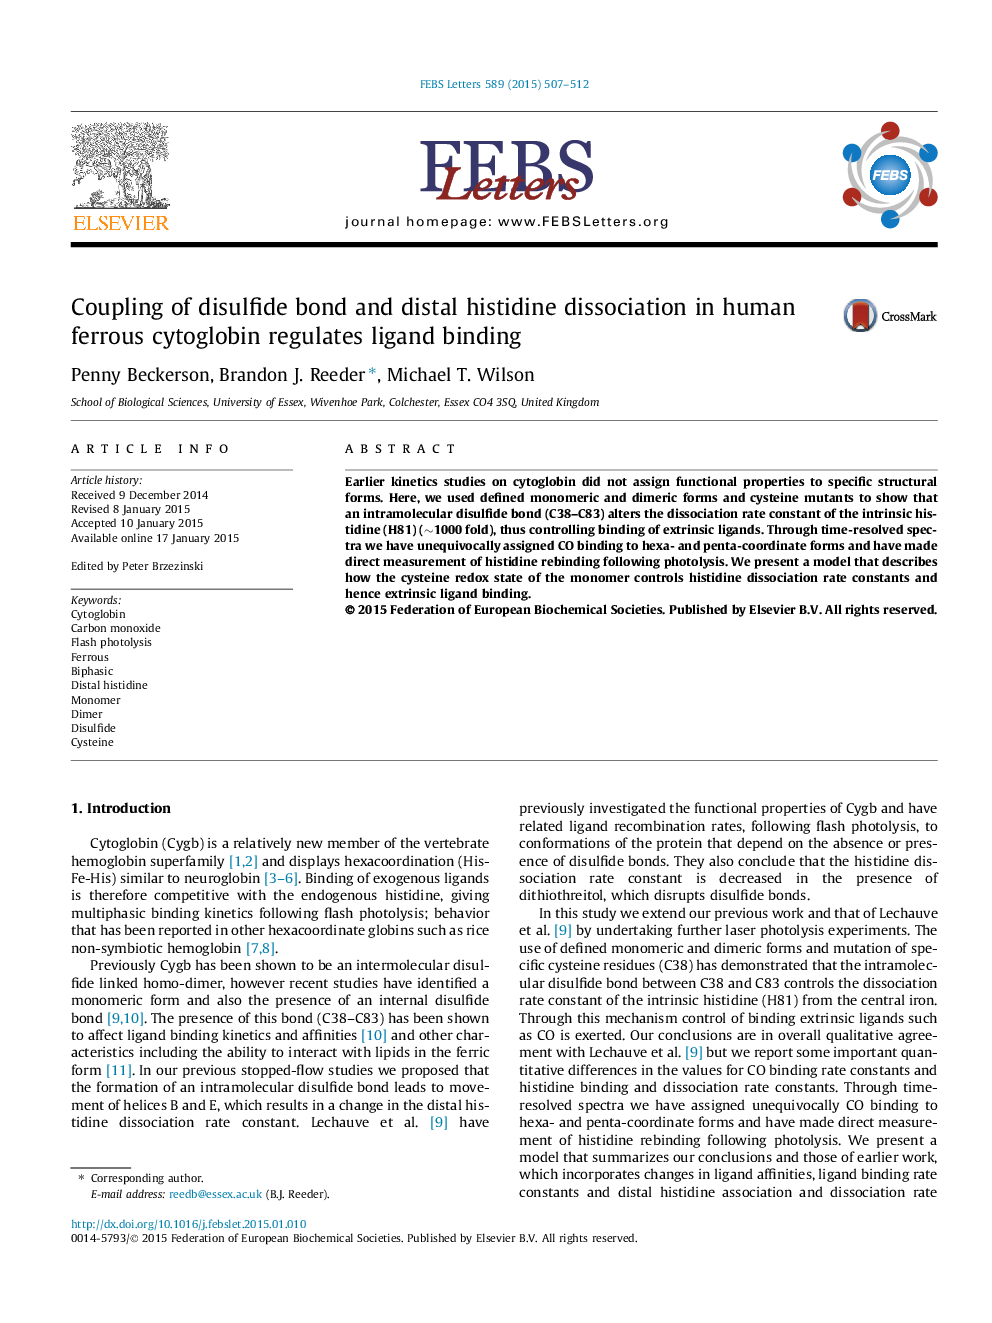 پیوند دی سولفید و تفکیک هیستیدین دیستال در سیتوگوگلوبین آلفا انسان، اتصال لیگاند را تنظیم می کند 